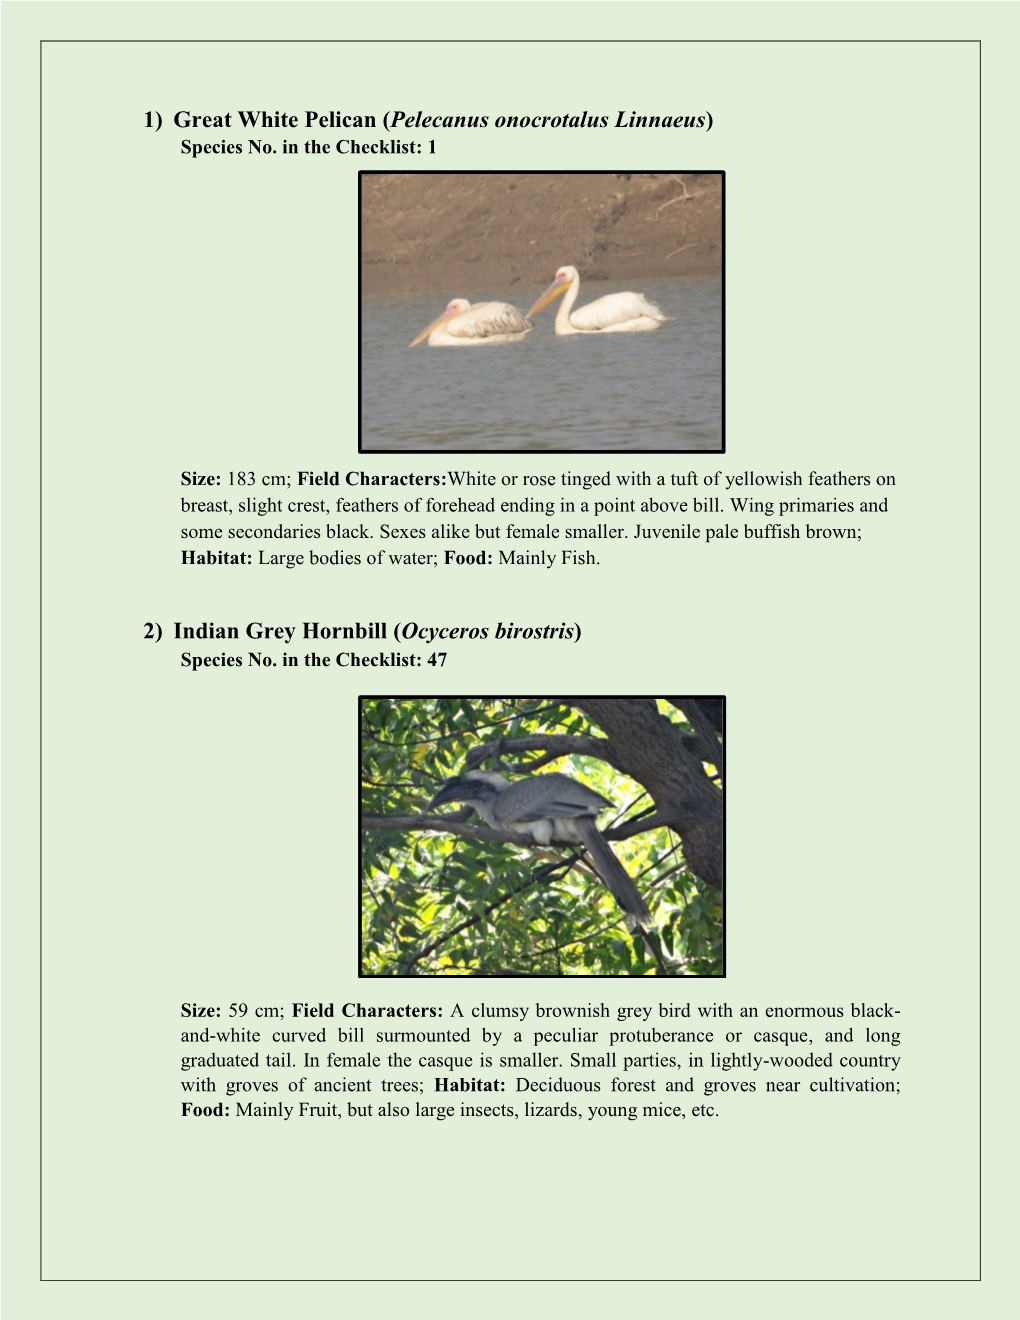 1) Great White Pelican (Pelecanus Onocrotalus Linnaeus) 2) Indian